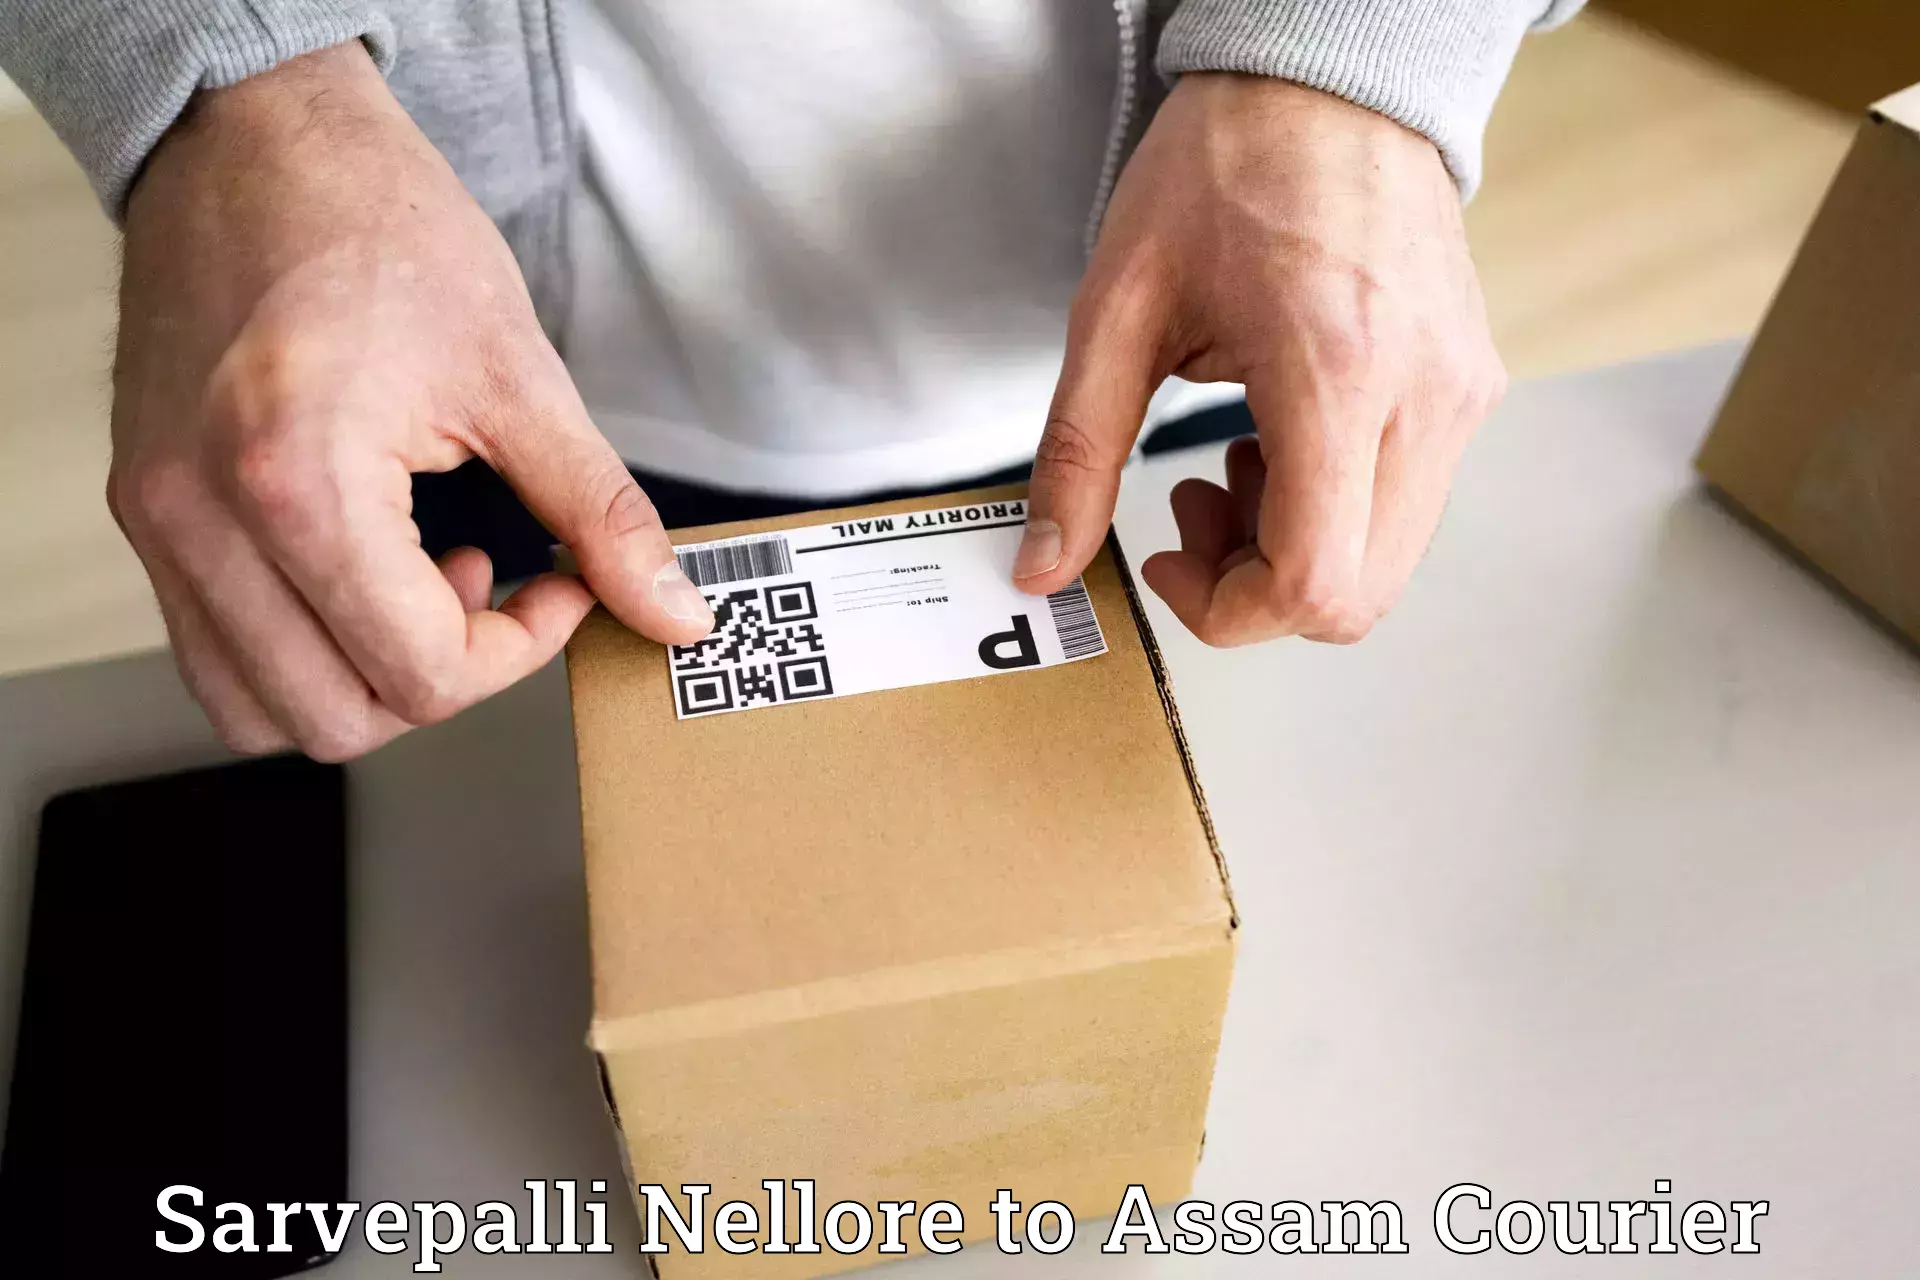 User-friendly delivery service Sarvepalli Nellore to Margherita